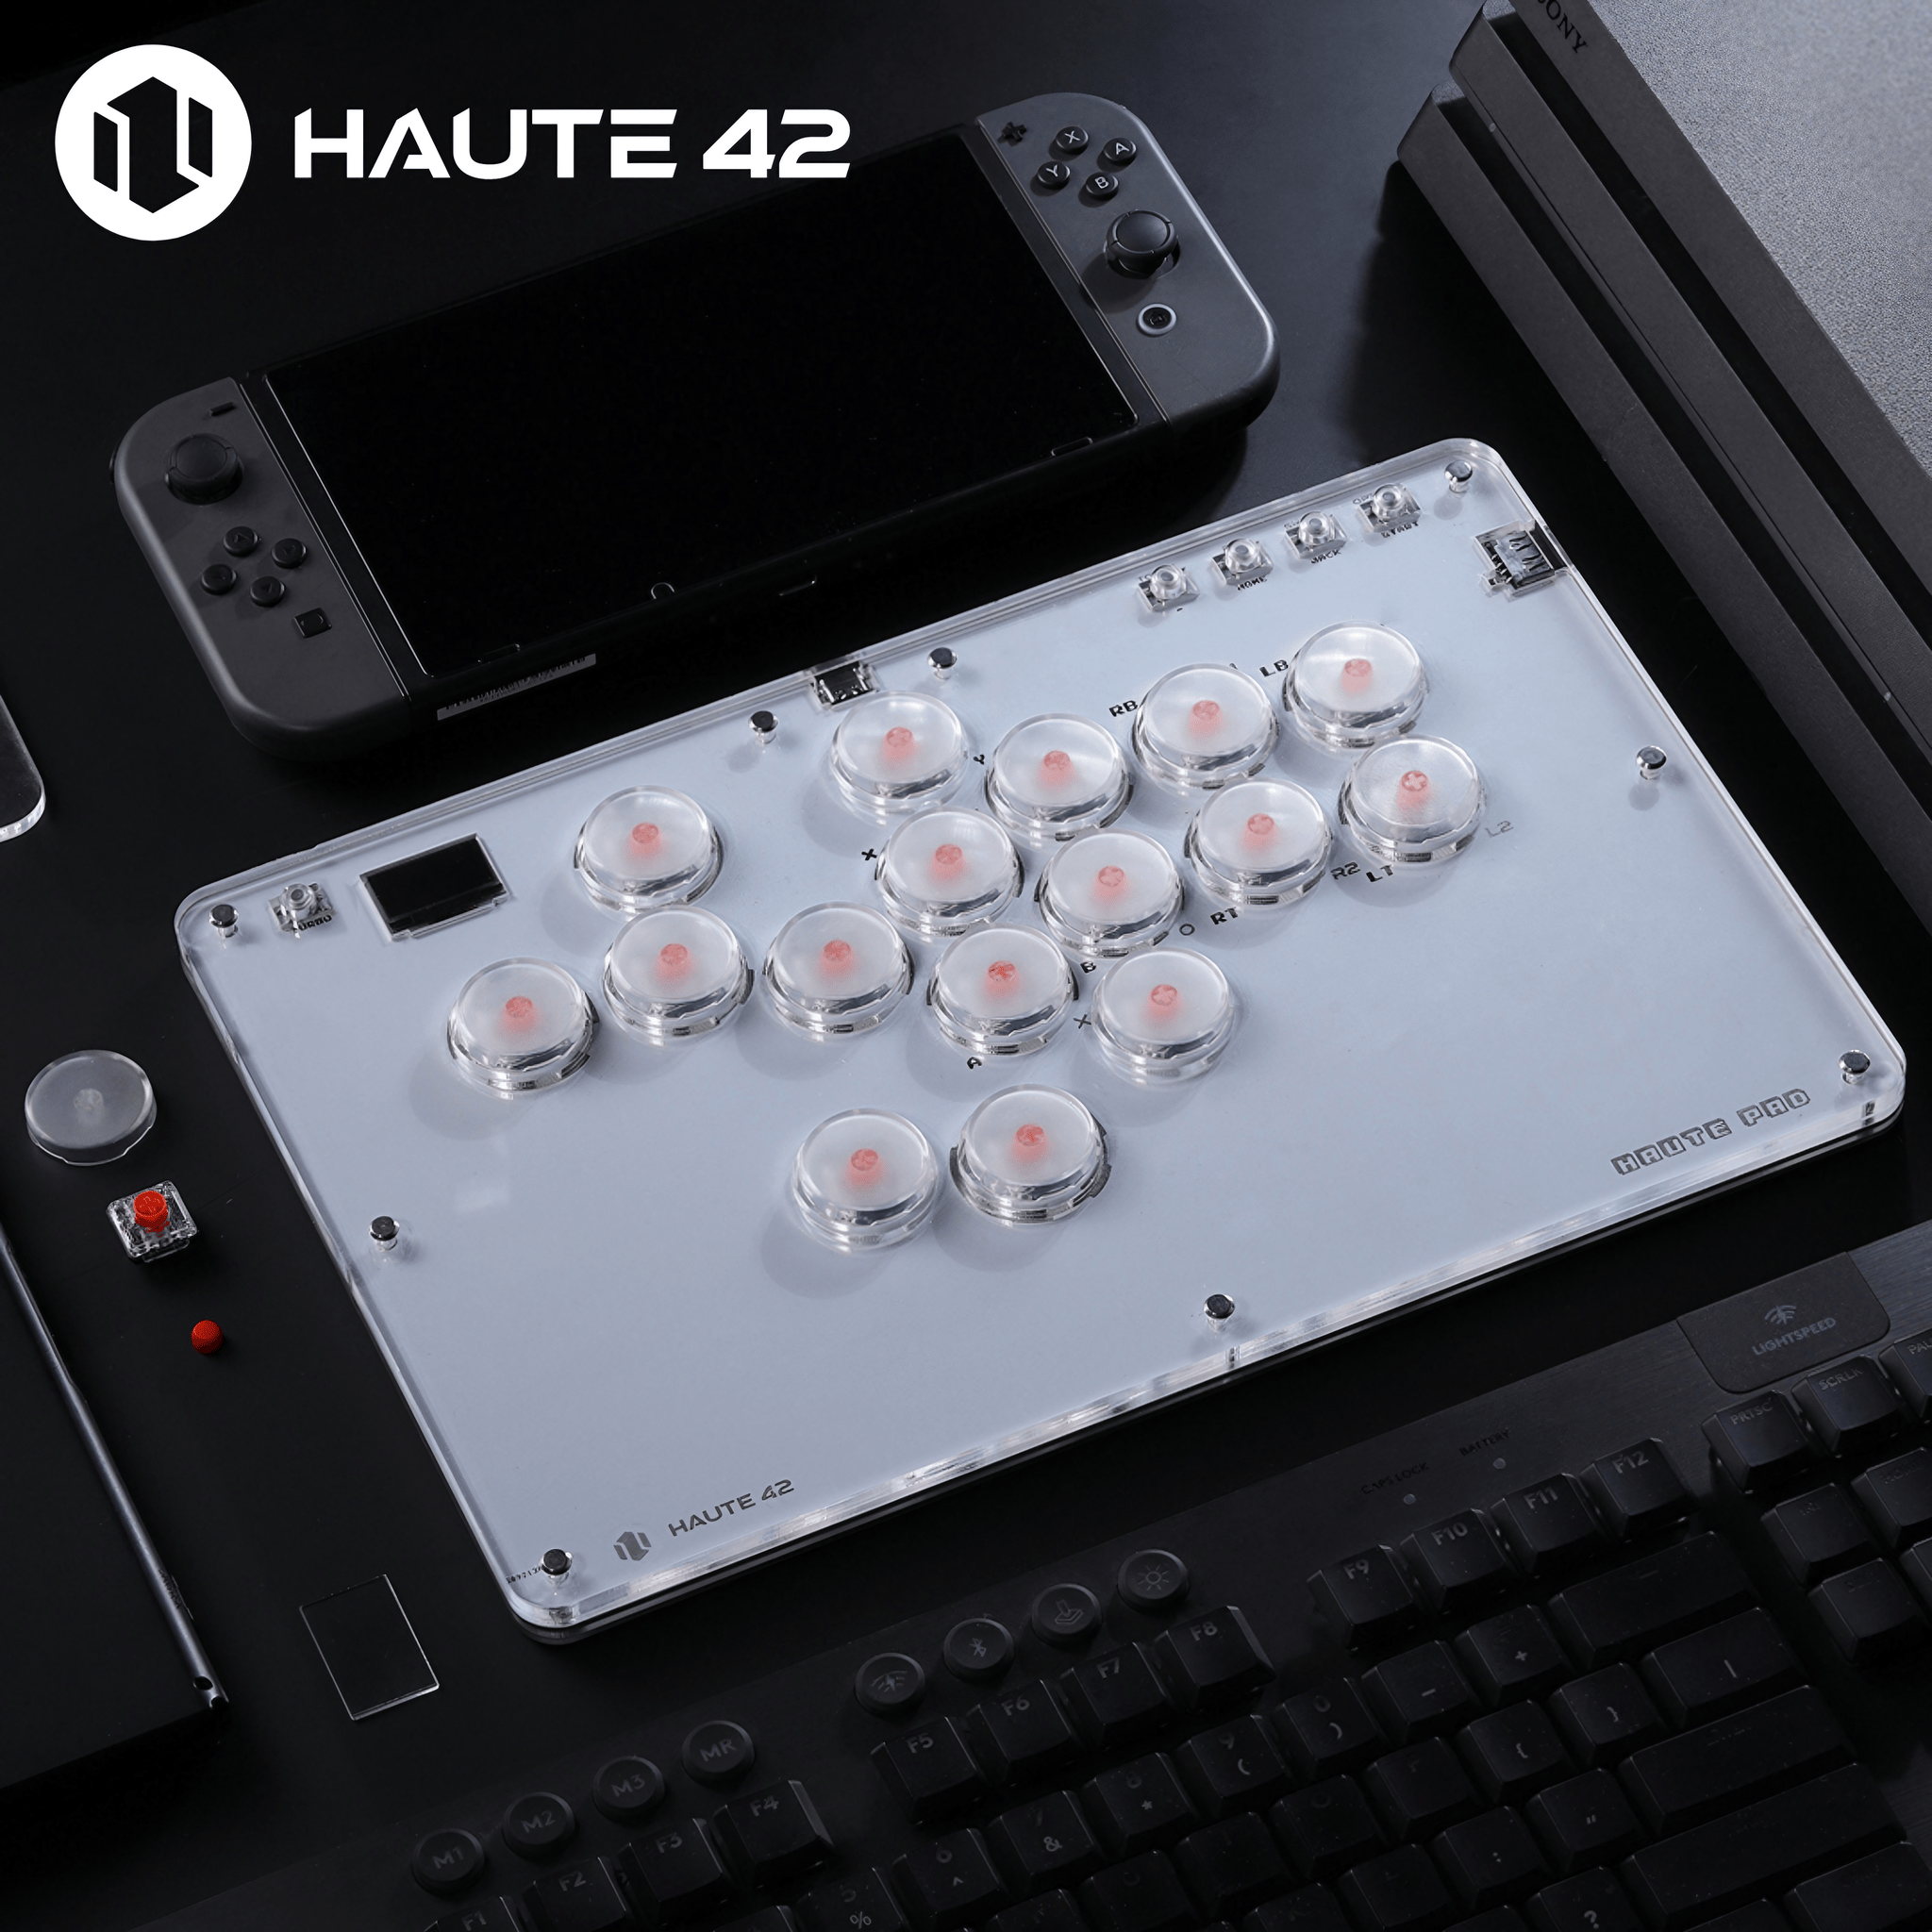 Haute42 HautePad T16 T13